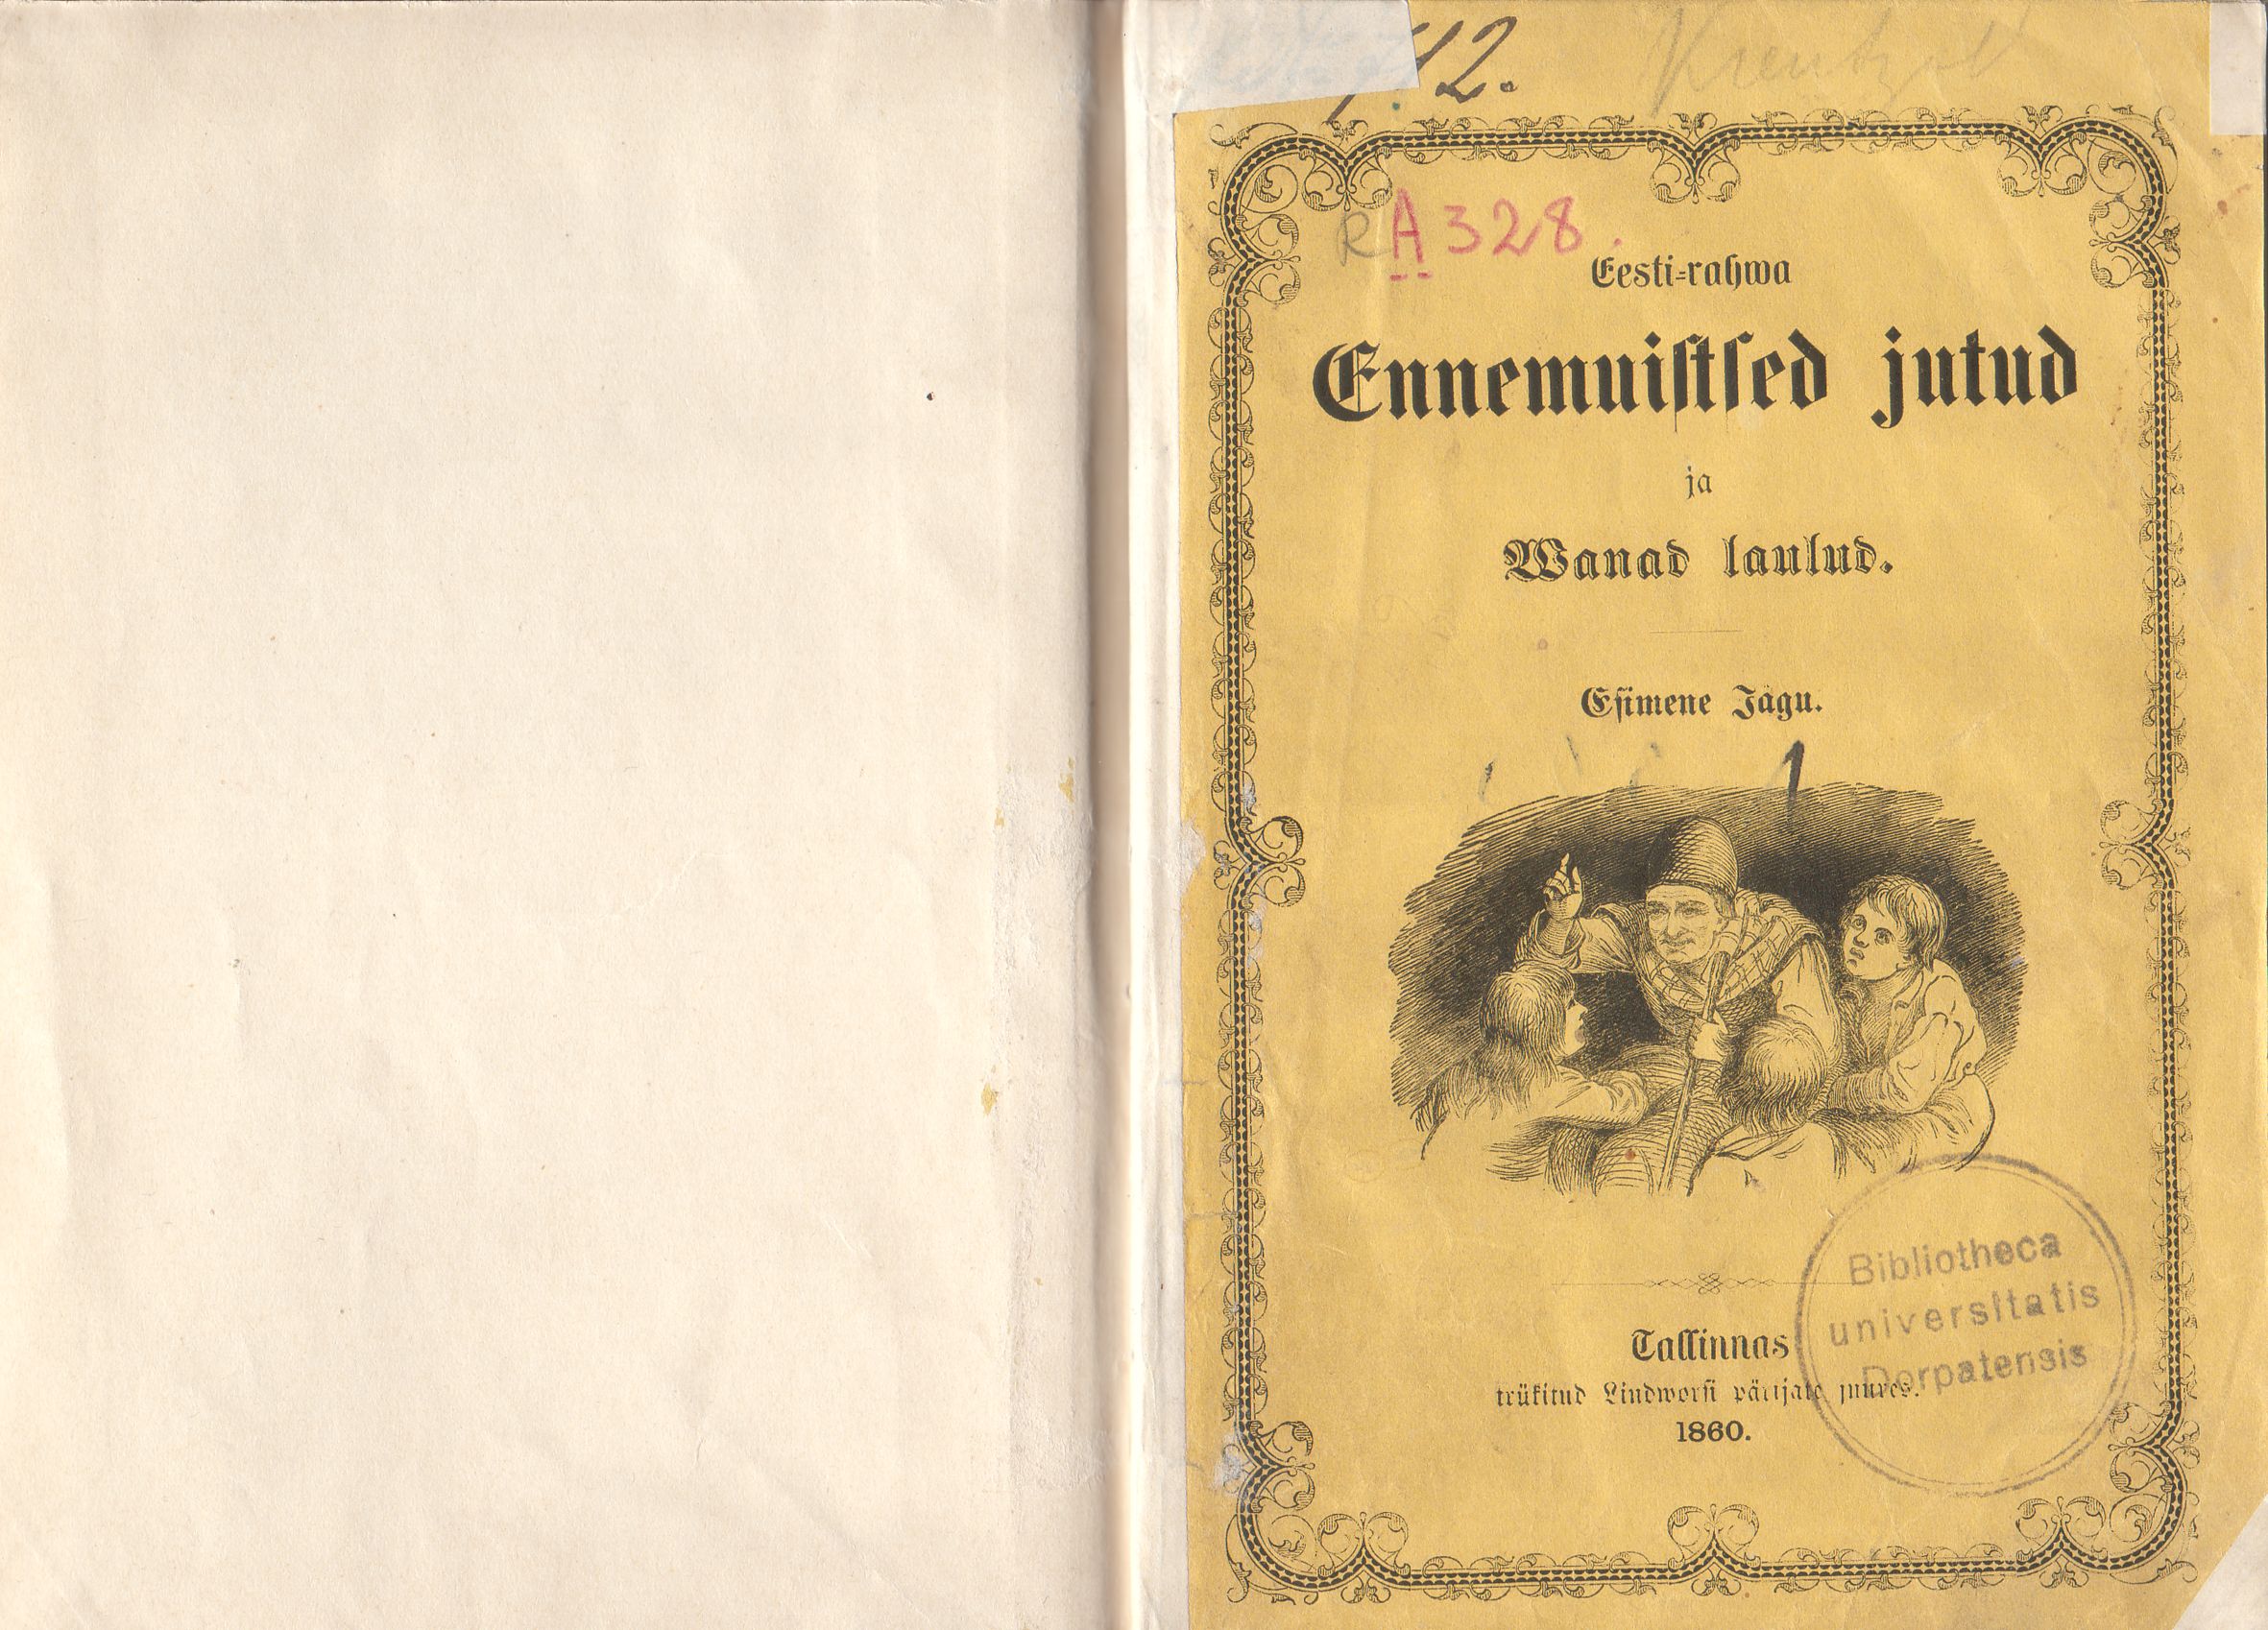 Eesti-rahwa Ennemuistsed jutud ja wanad laulud [1] (1860) | 2. Esikaas